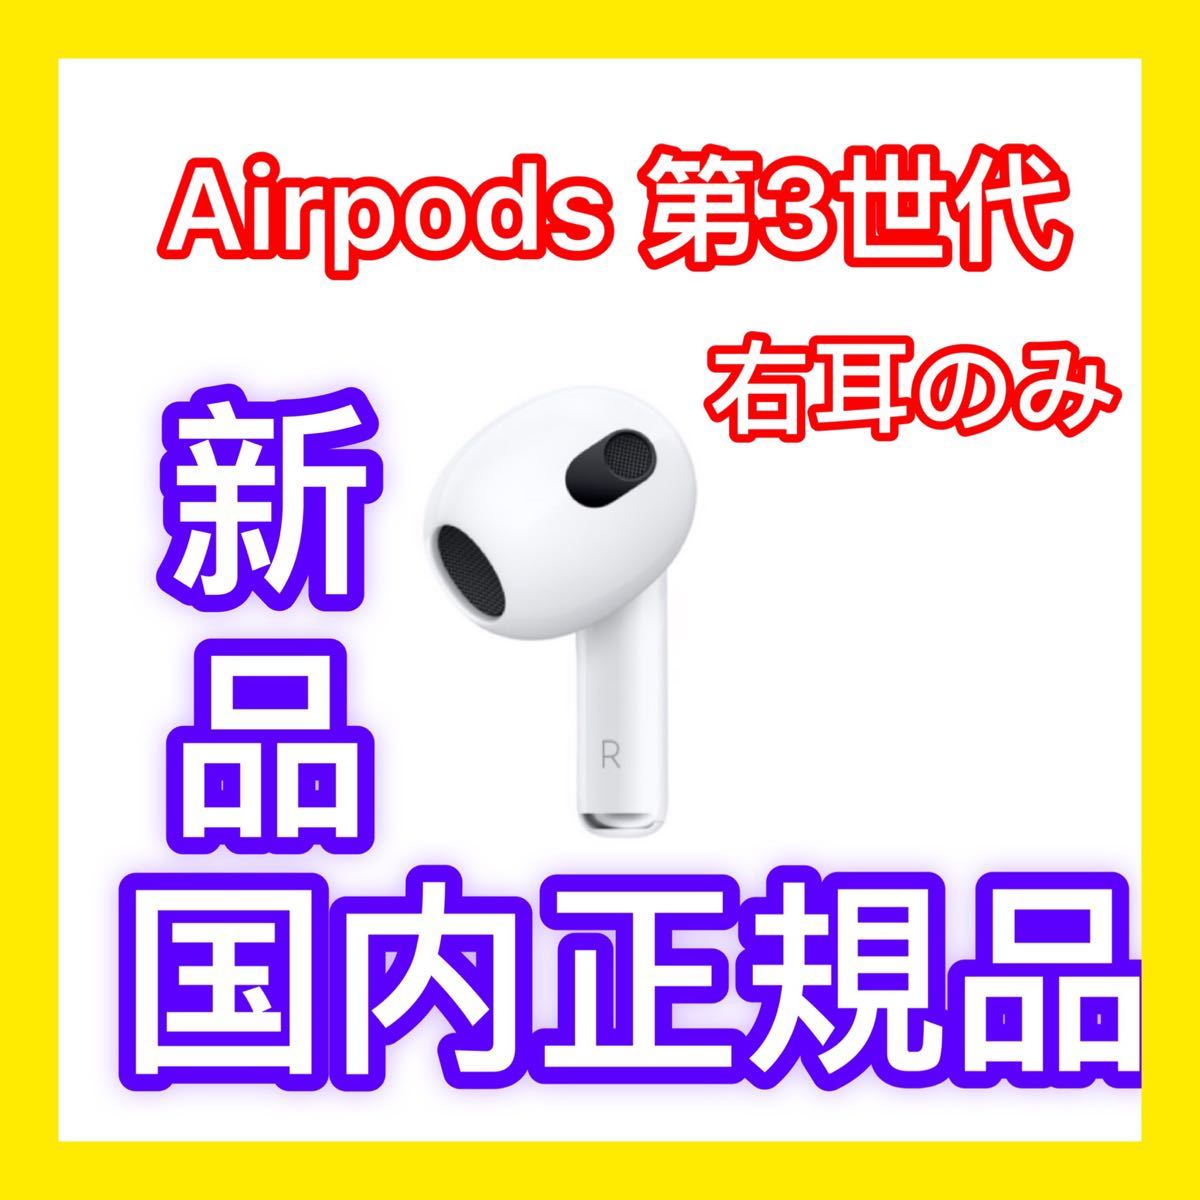 エアーポッズ 第三世代R片耳 第３世代AirPods右耳のみApple国内正規品